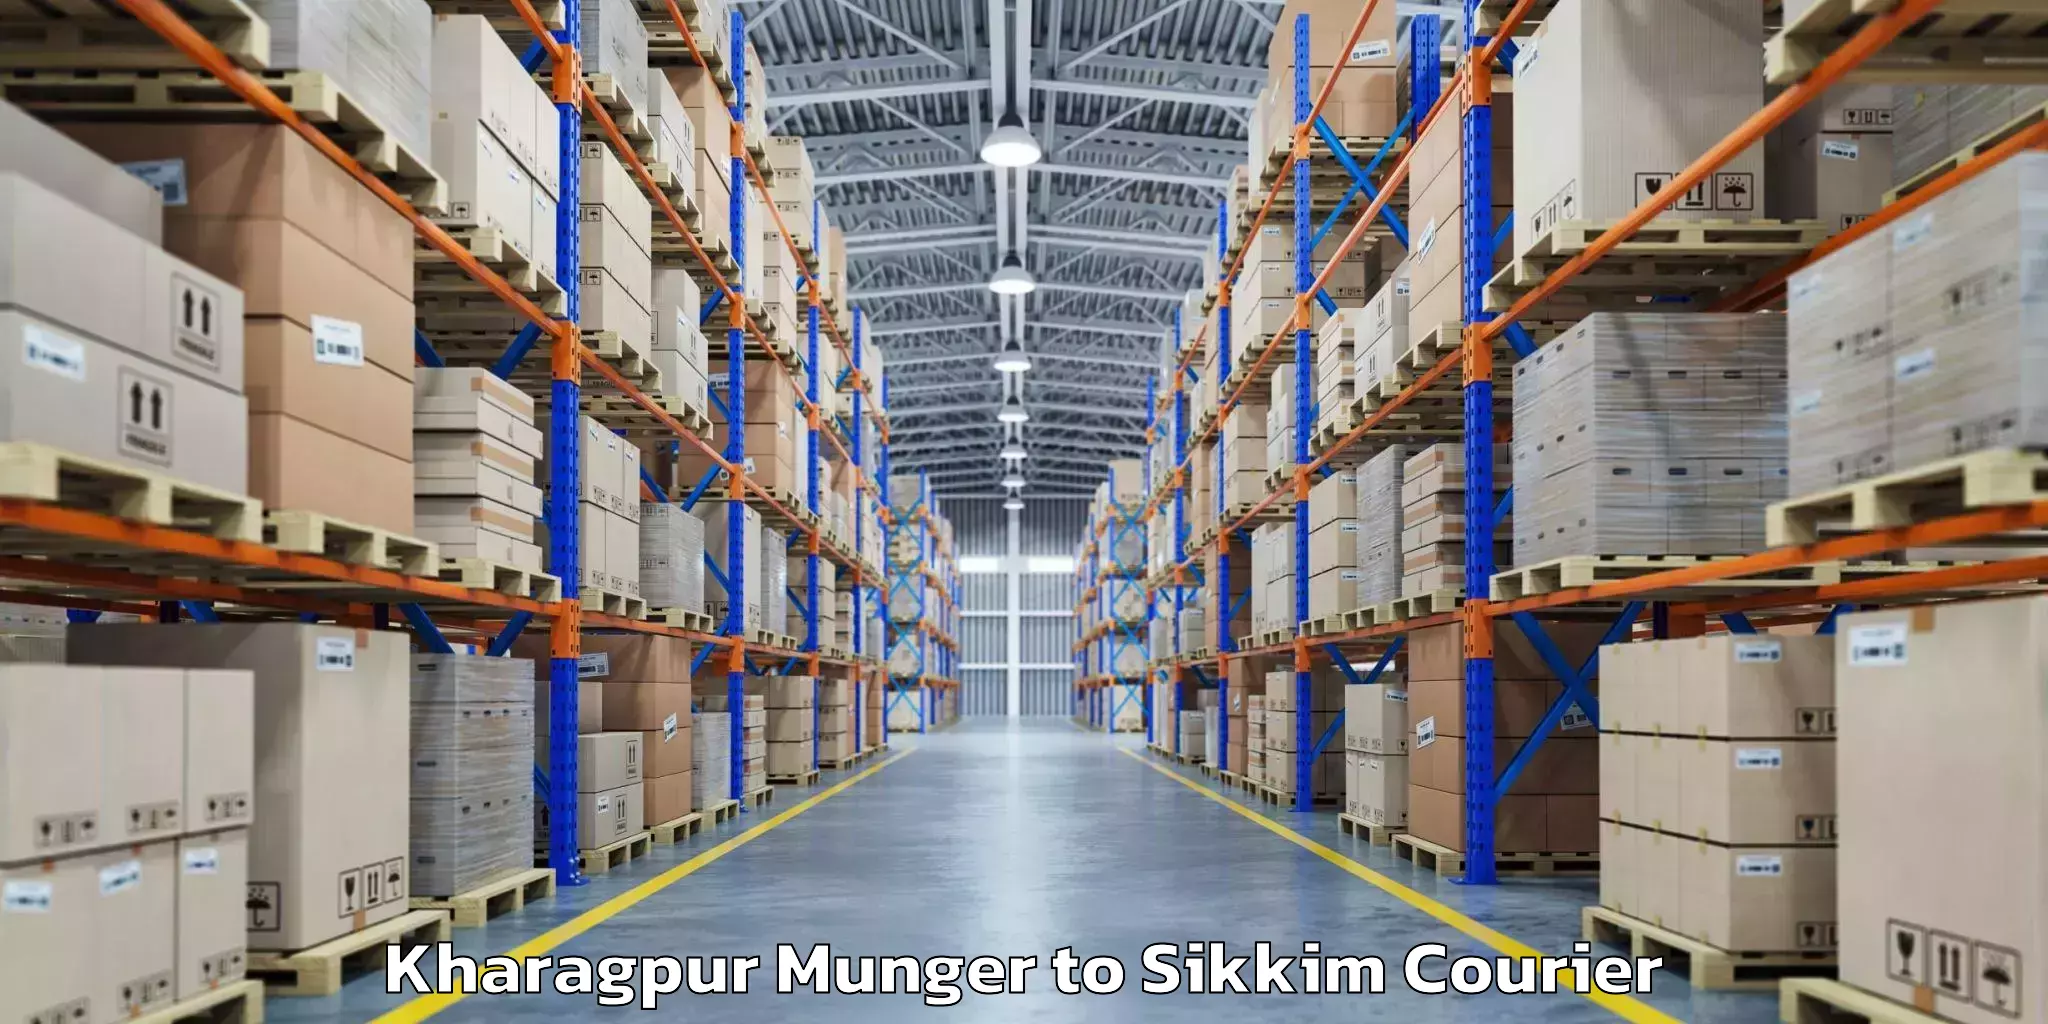 Baggage shipping service Kharagpur Munger to Rongli